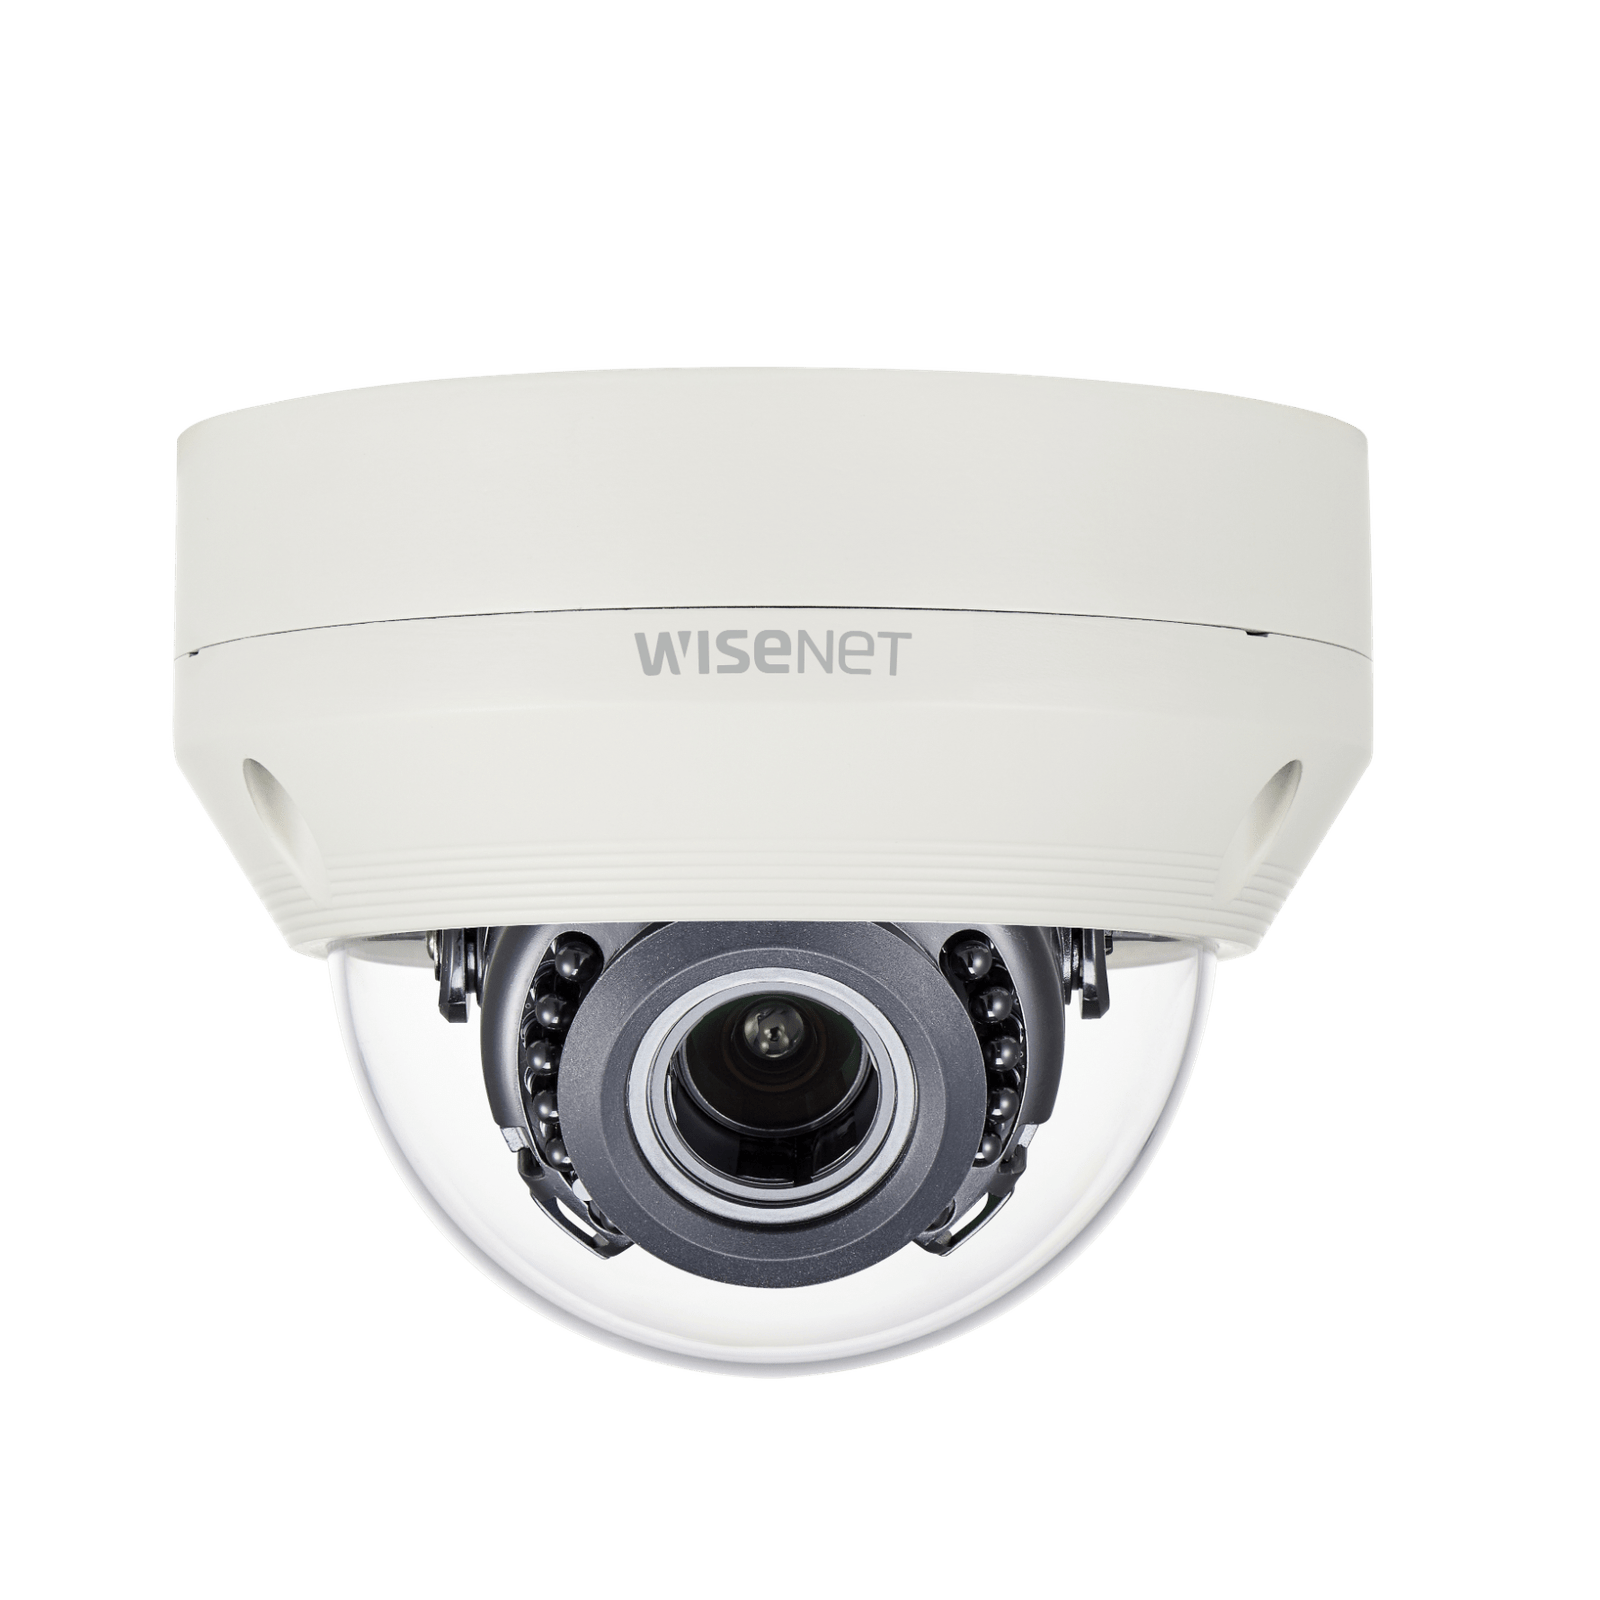 HCV-6080R Dome Security Camera